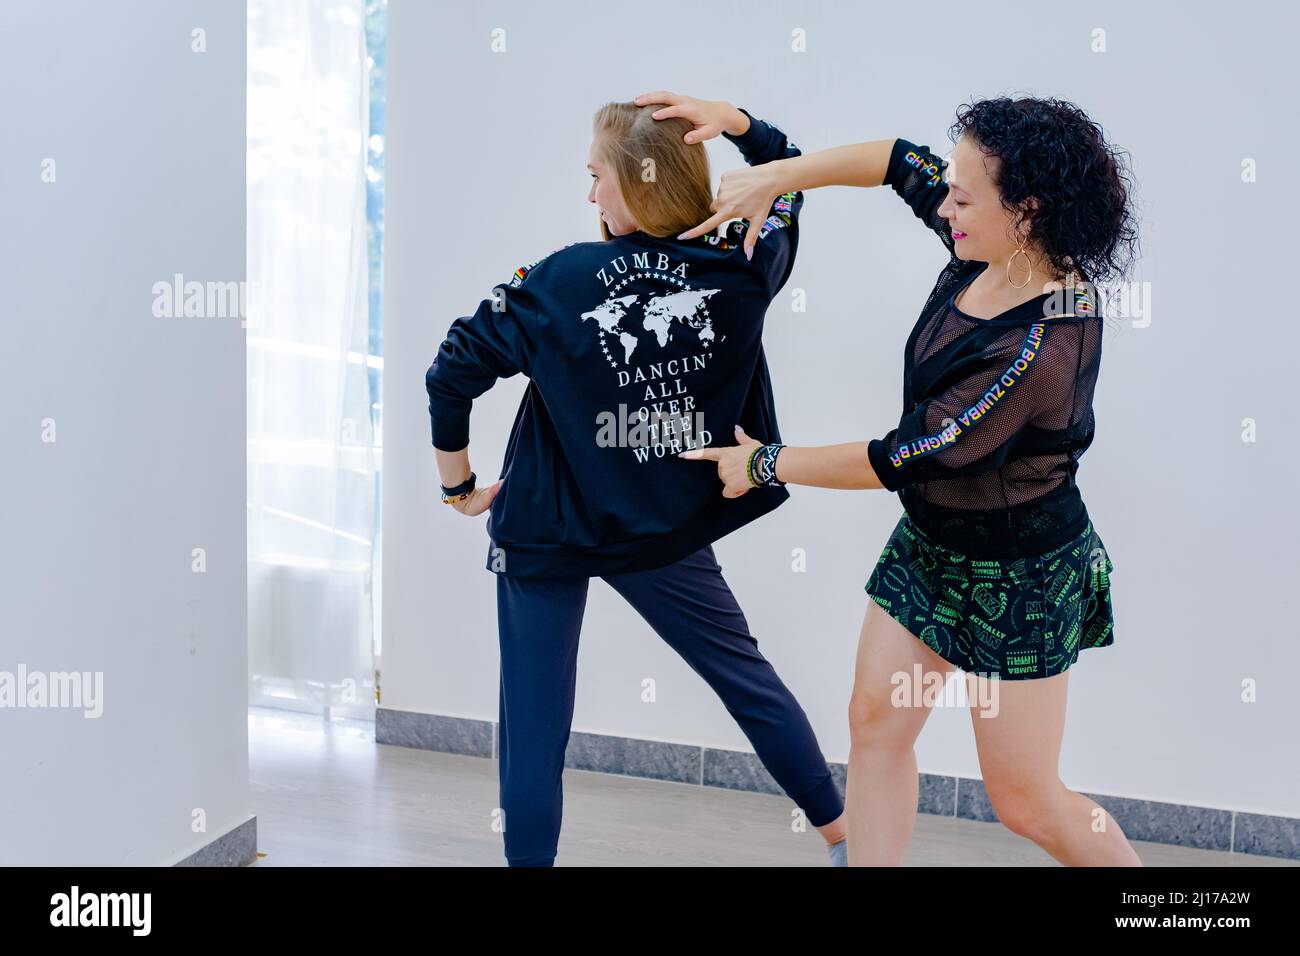 Russland, Krasnodar 26.09.2021 zwei Dame 30-35 Jahre alt wie Zumba tanzen. Konzept des aktiven Tanzens in der ganzen Welt. Stockfoto